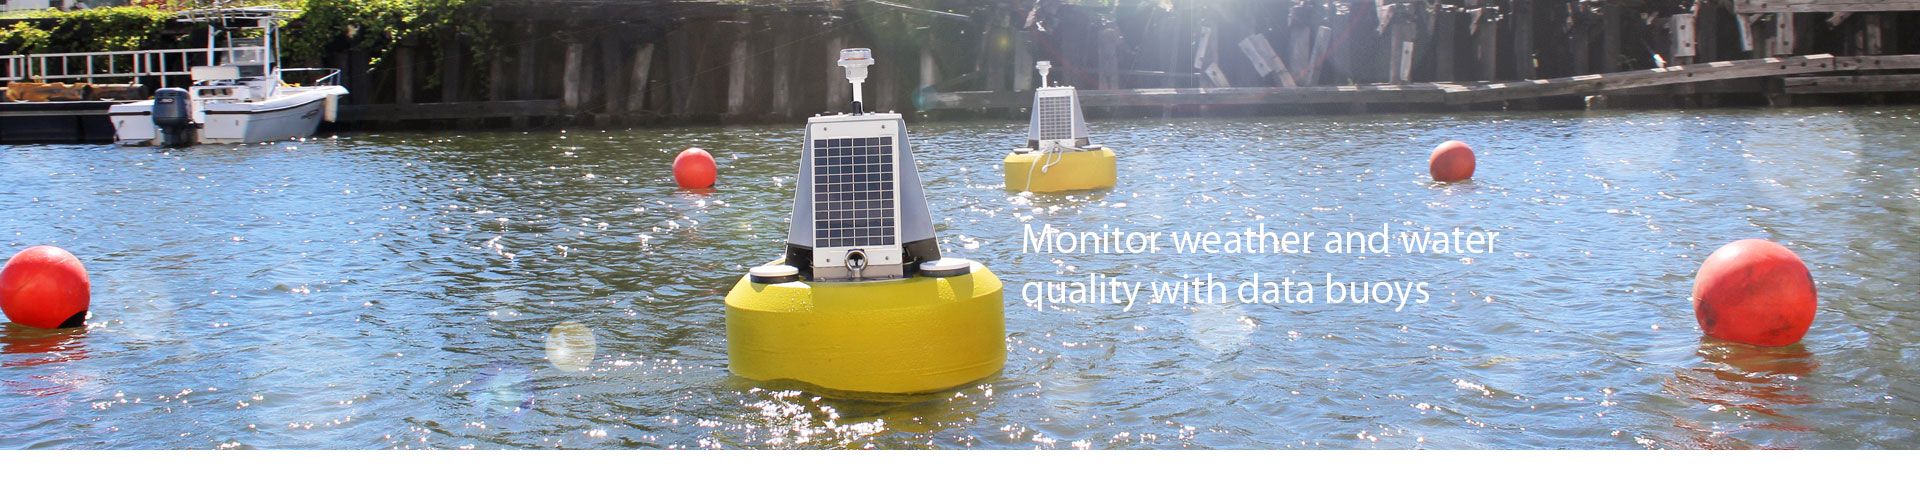 浮標水質自動監測系統